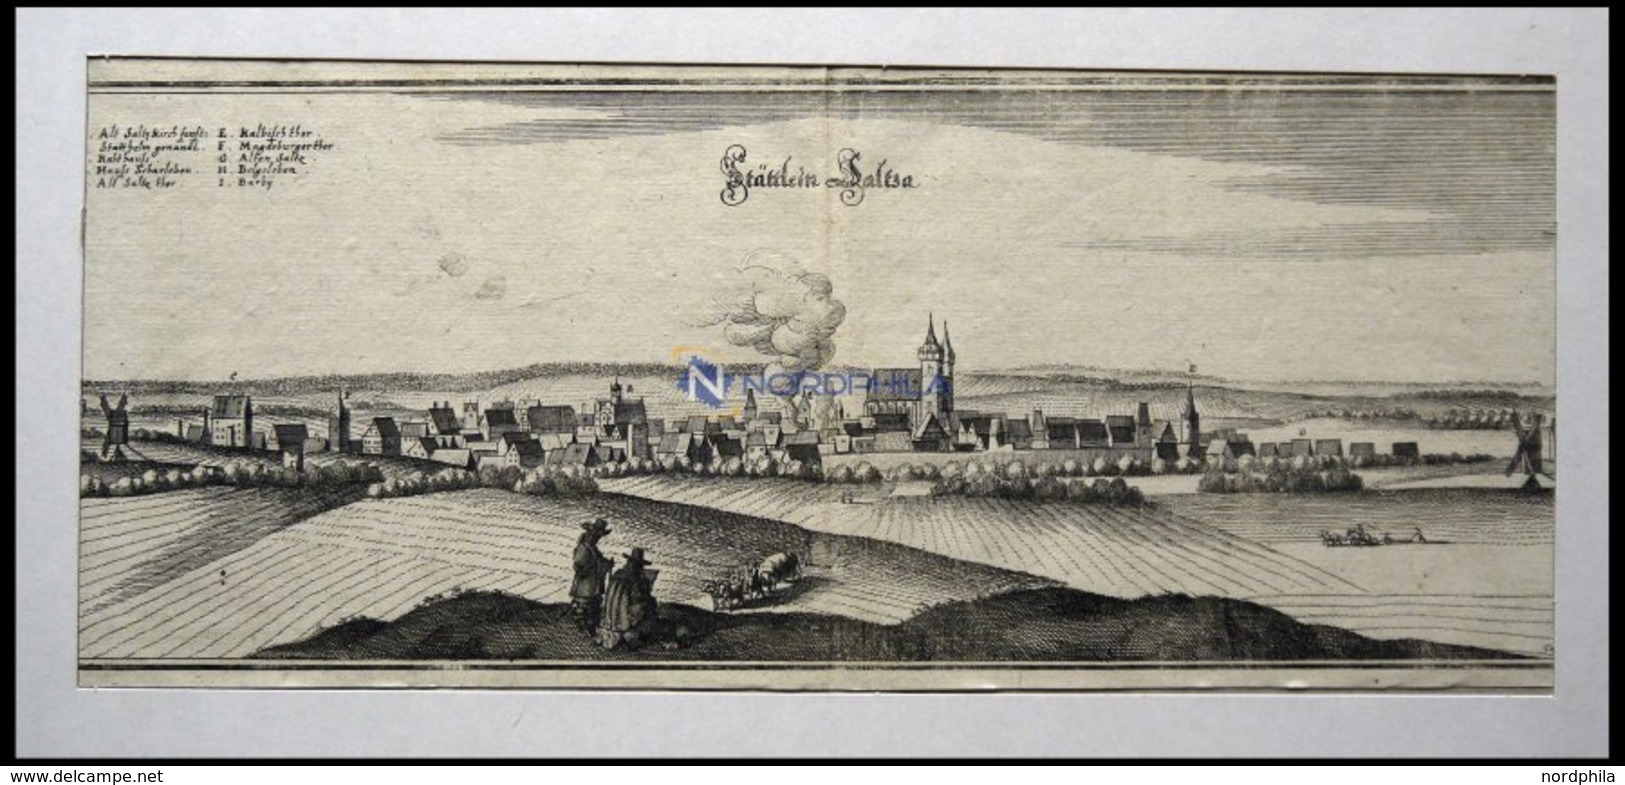 SCHÖNEBECK Bei Magdeburg, Stadtteil Salza, Gesamtansicht, Kupferstich Von Merian Um 1645 - Litografia